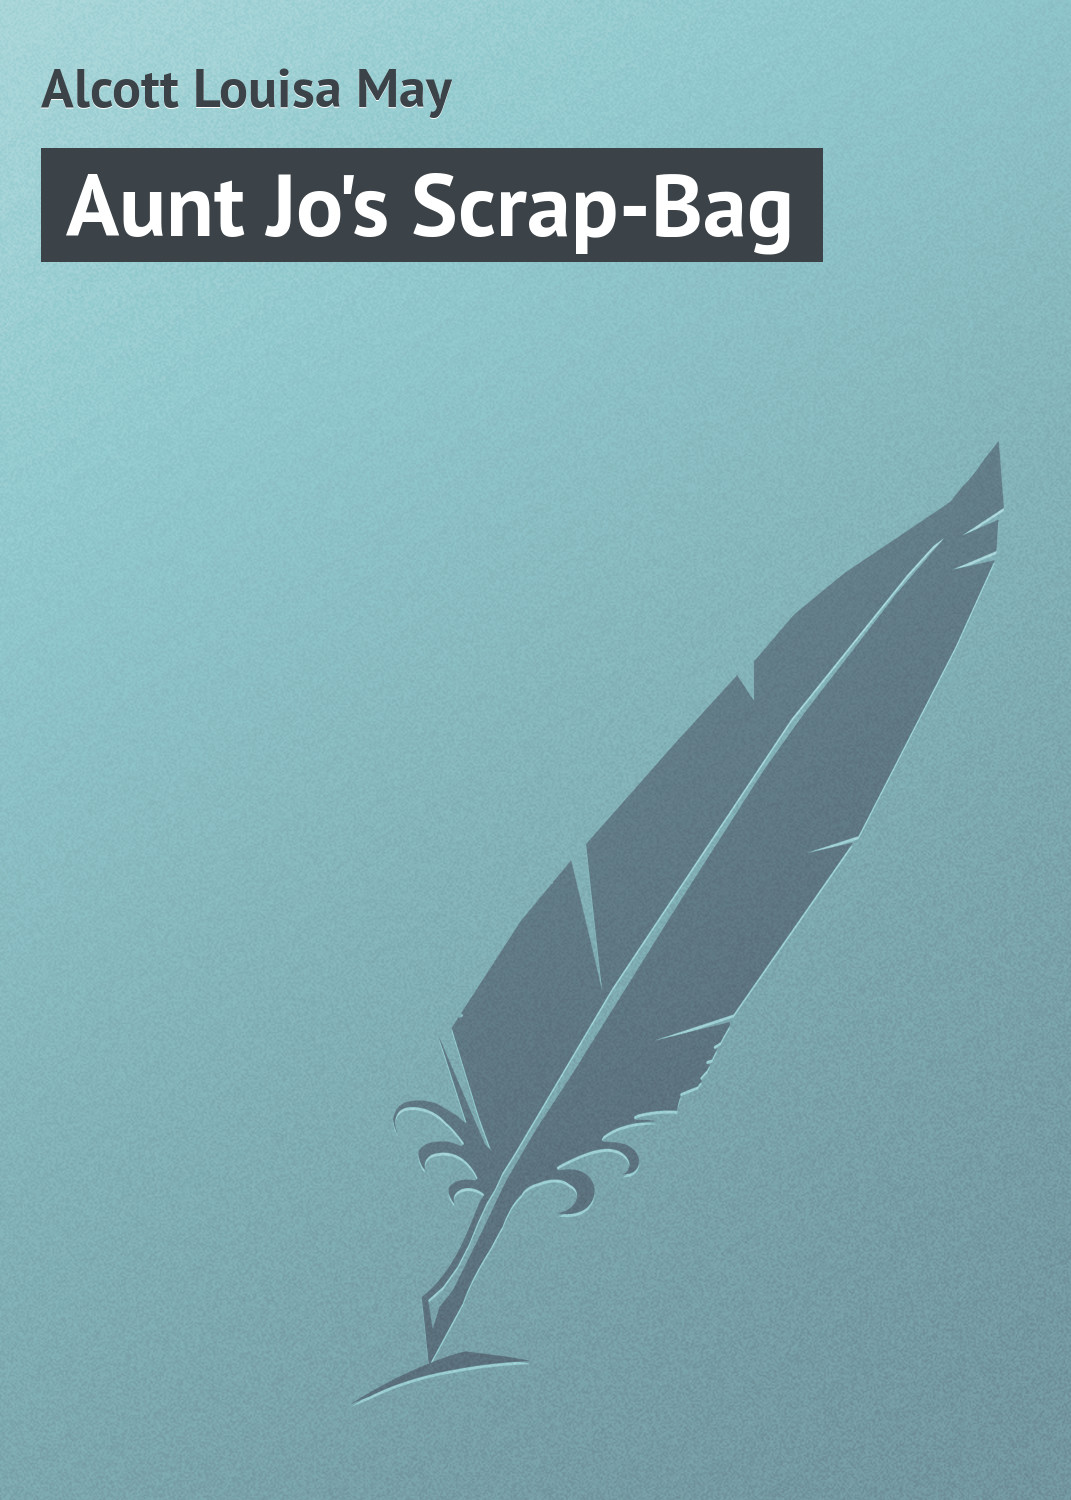 Книга Aunt Jo's Scrap-Bag из серии , созданная Louisa Alcott, может относится к жанру Иностранные языки, Зарубежная классика, Зарубежные детские книги. Стоимость электронной книги Aunt Jo's Scrap-Bag с идентификатором 23147867 составляет 5.99 руб.